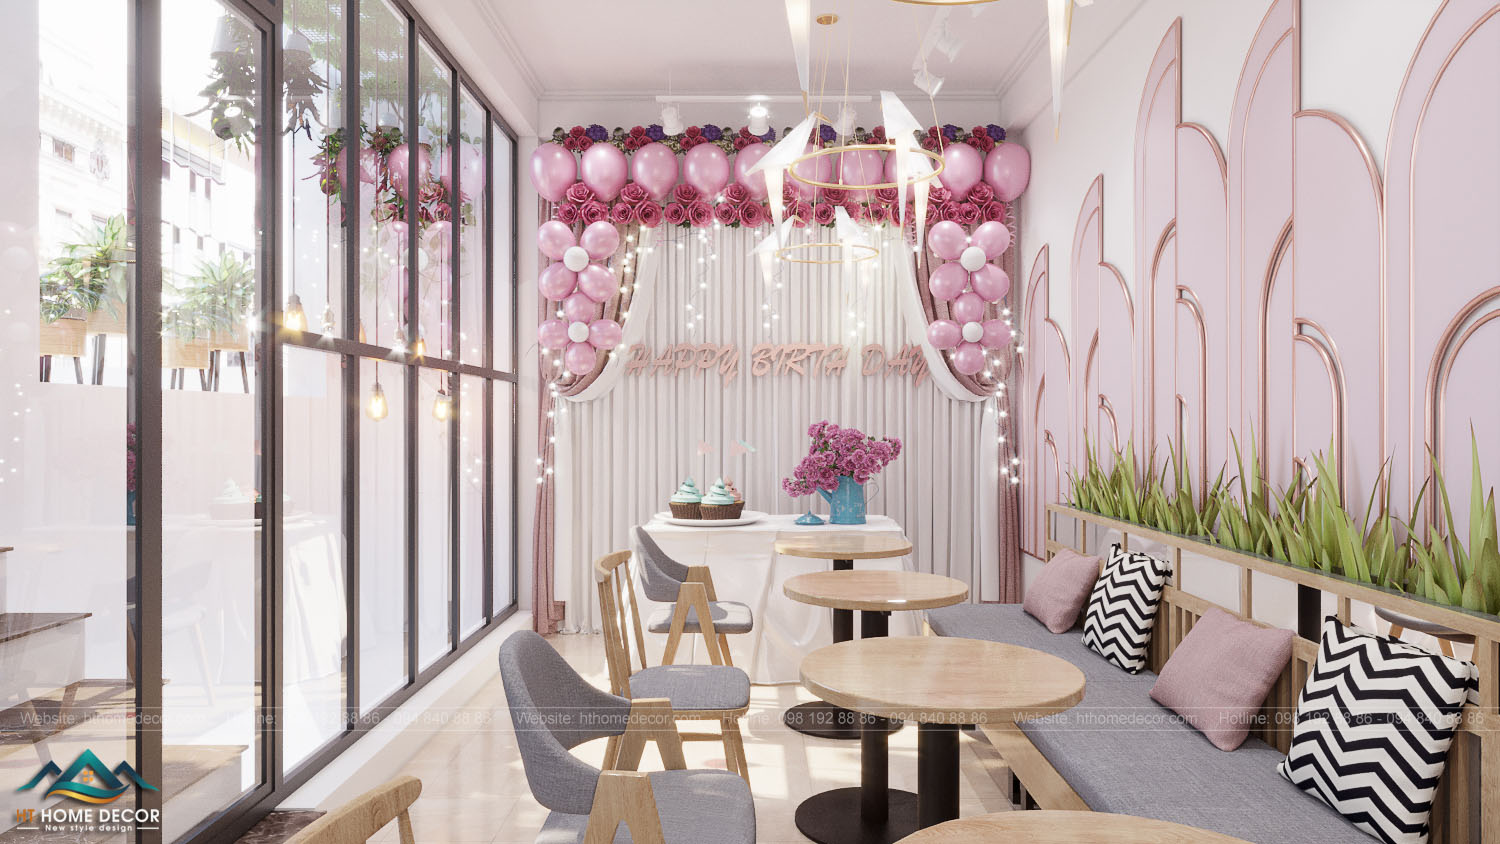 quán cà phê lãng mạn Trang hoàng lung linh với đèn chớp, bóng bay và hoa tone-sur-tone làm nên vẻ đẹp